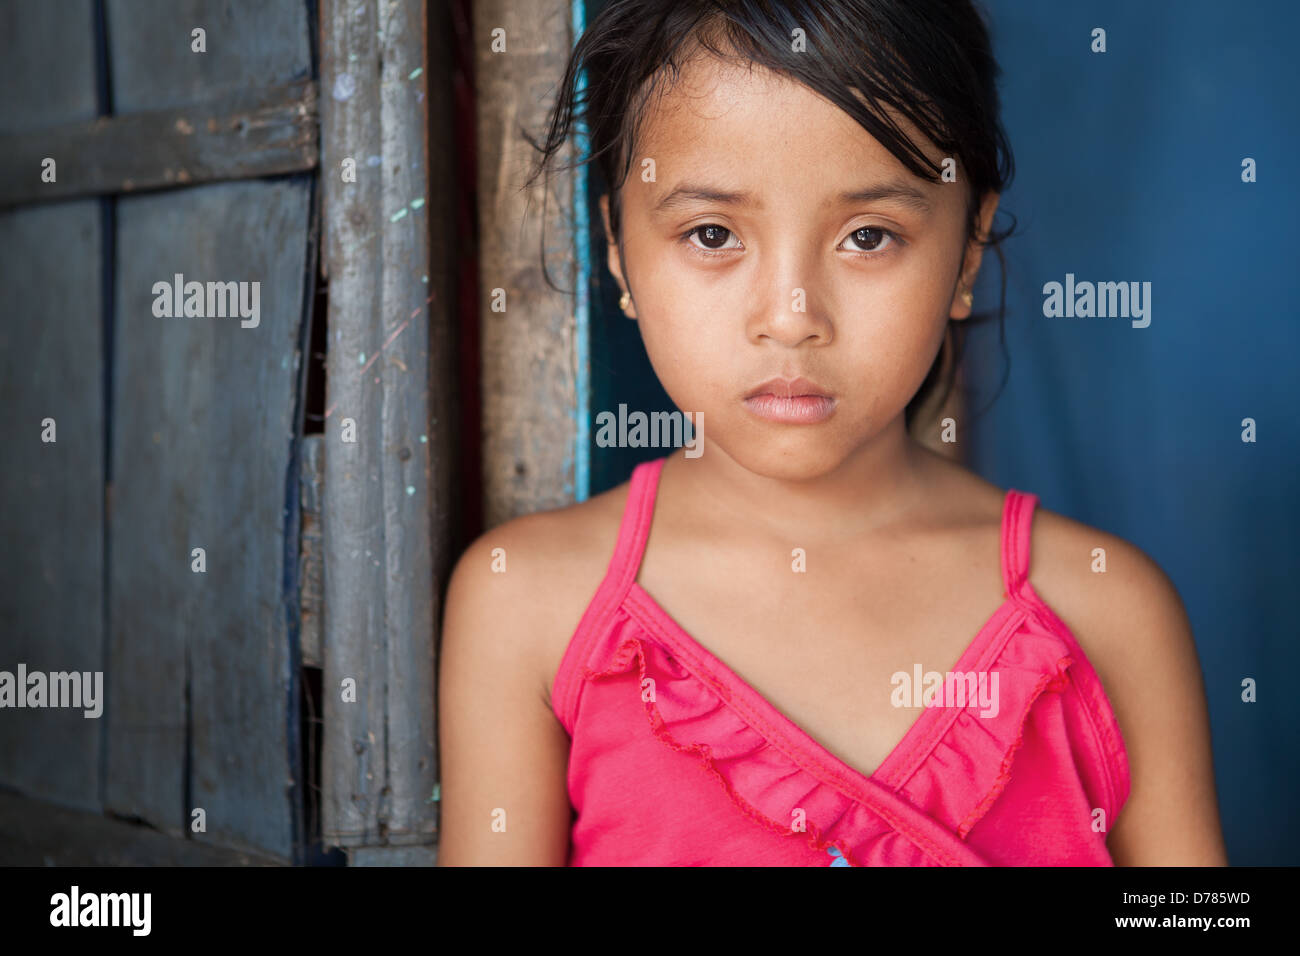 Portrait d'une jeune fille de la région frappée par la pauvreté dans la région de Manille, aux Philippines. Banque D'Images